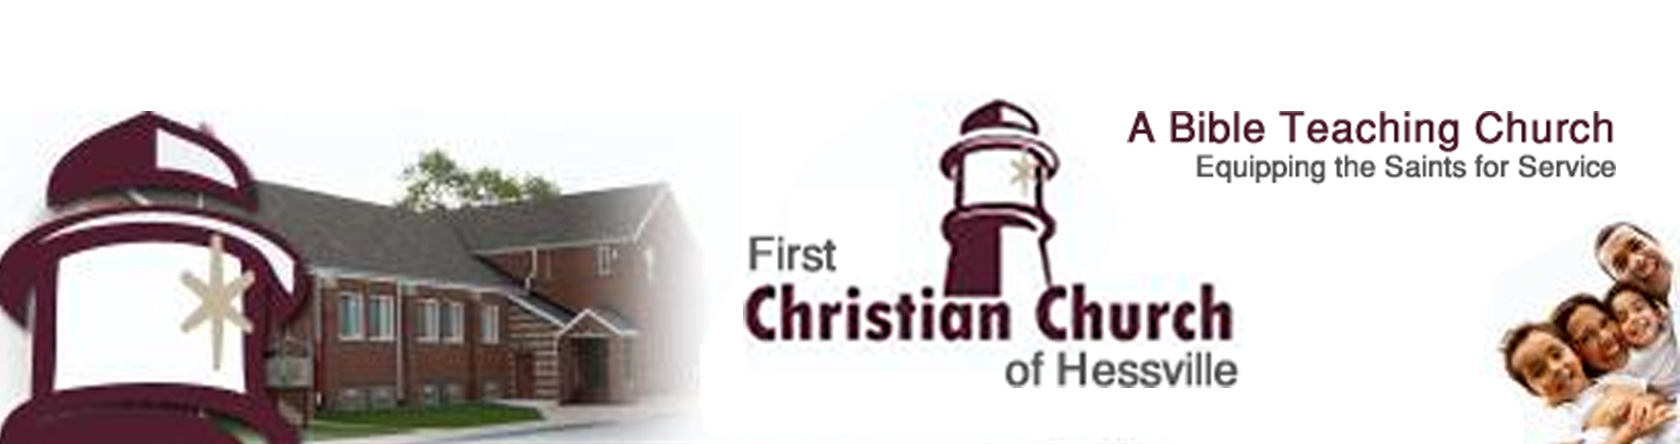 First Christian Church of Hessville